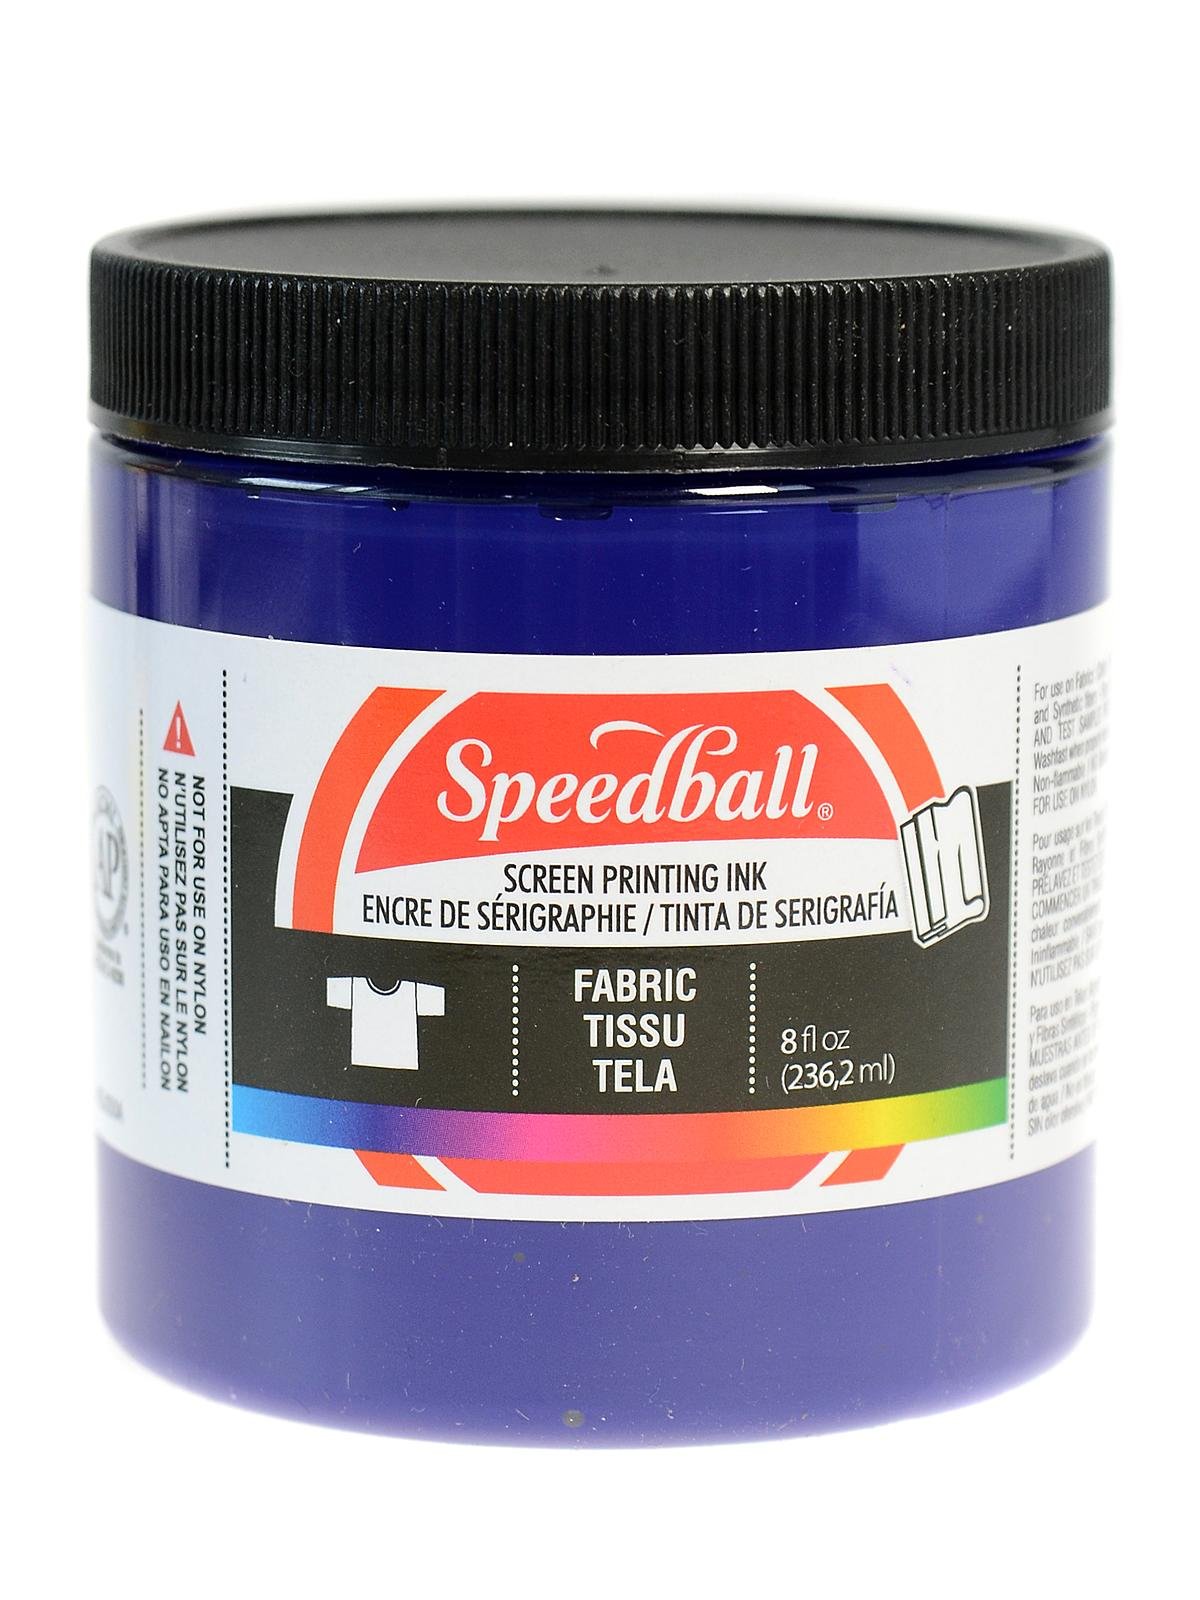 Speedball Fabric Screen Printing Ink 8 oz. - Night Glo Yellow